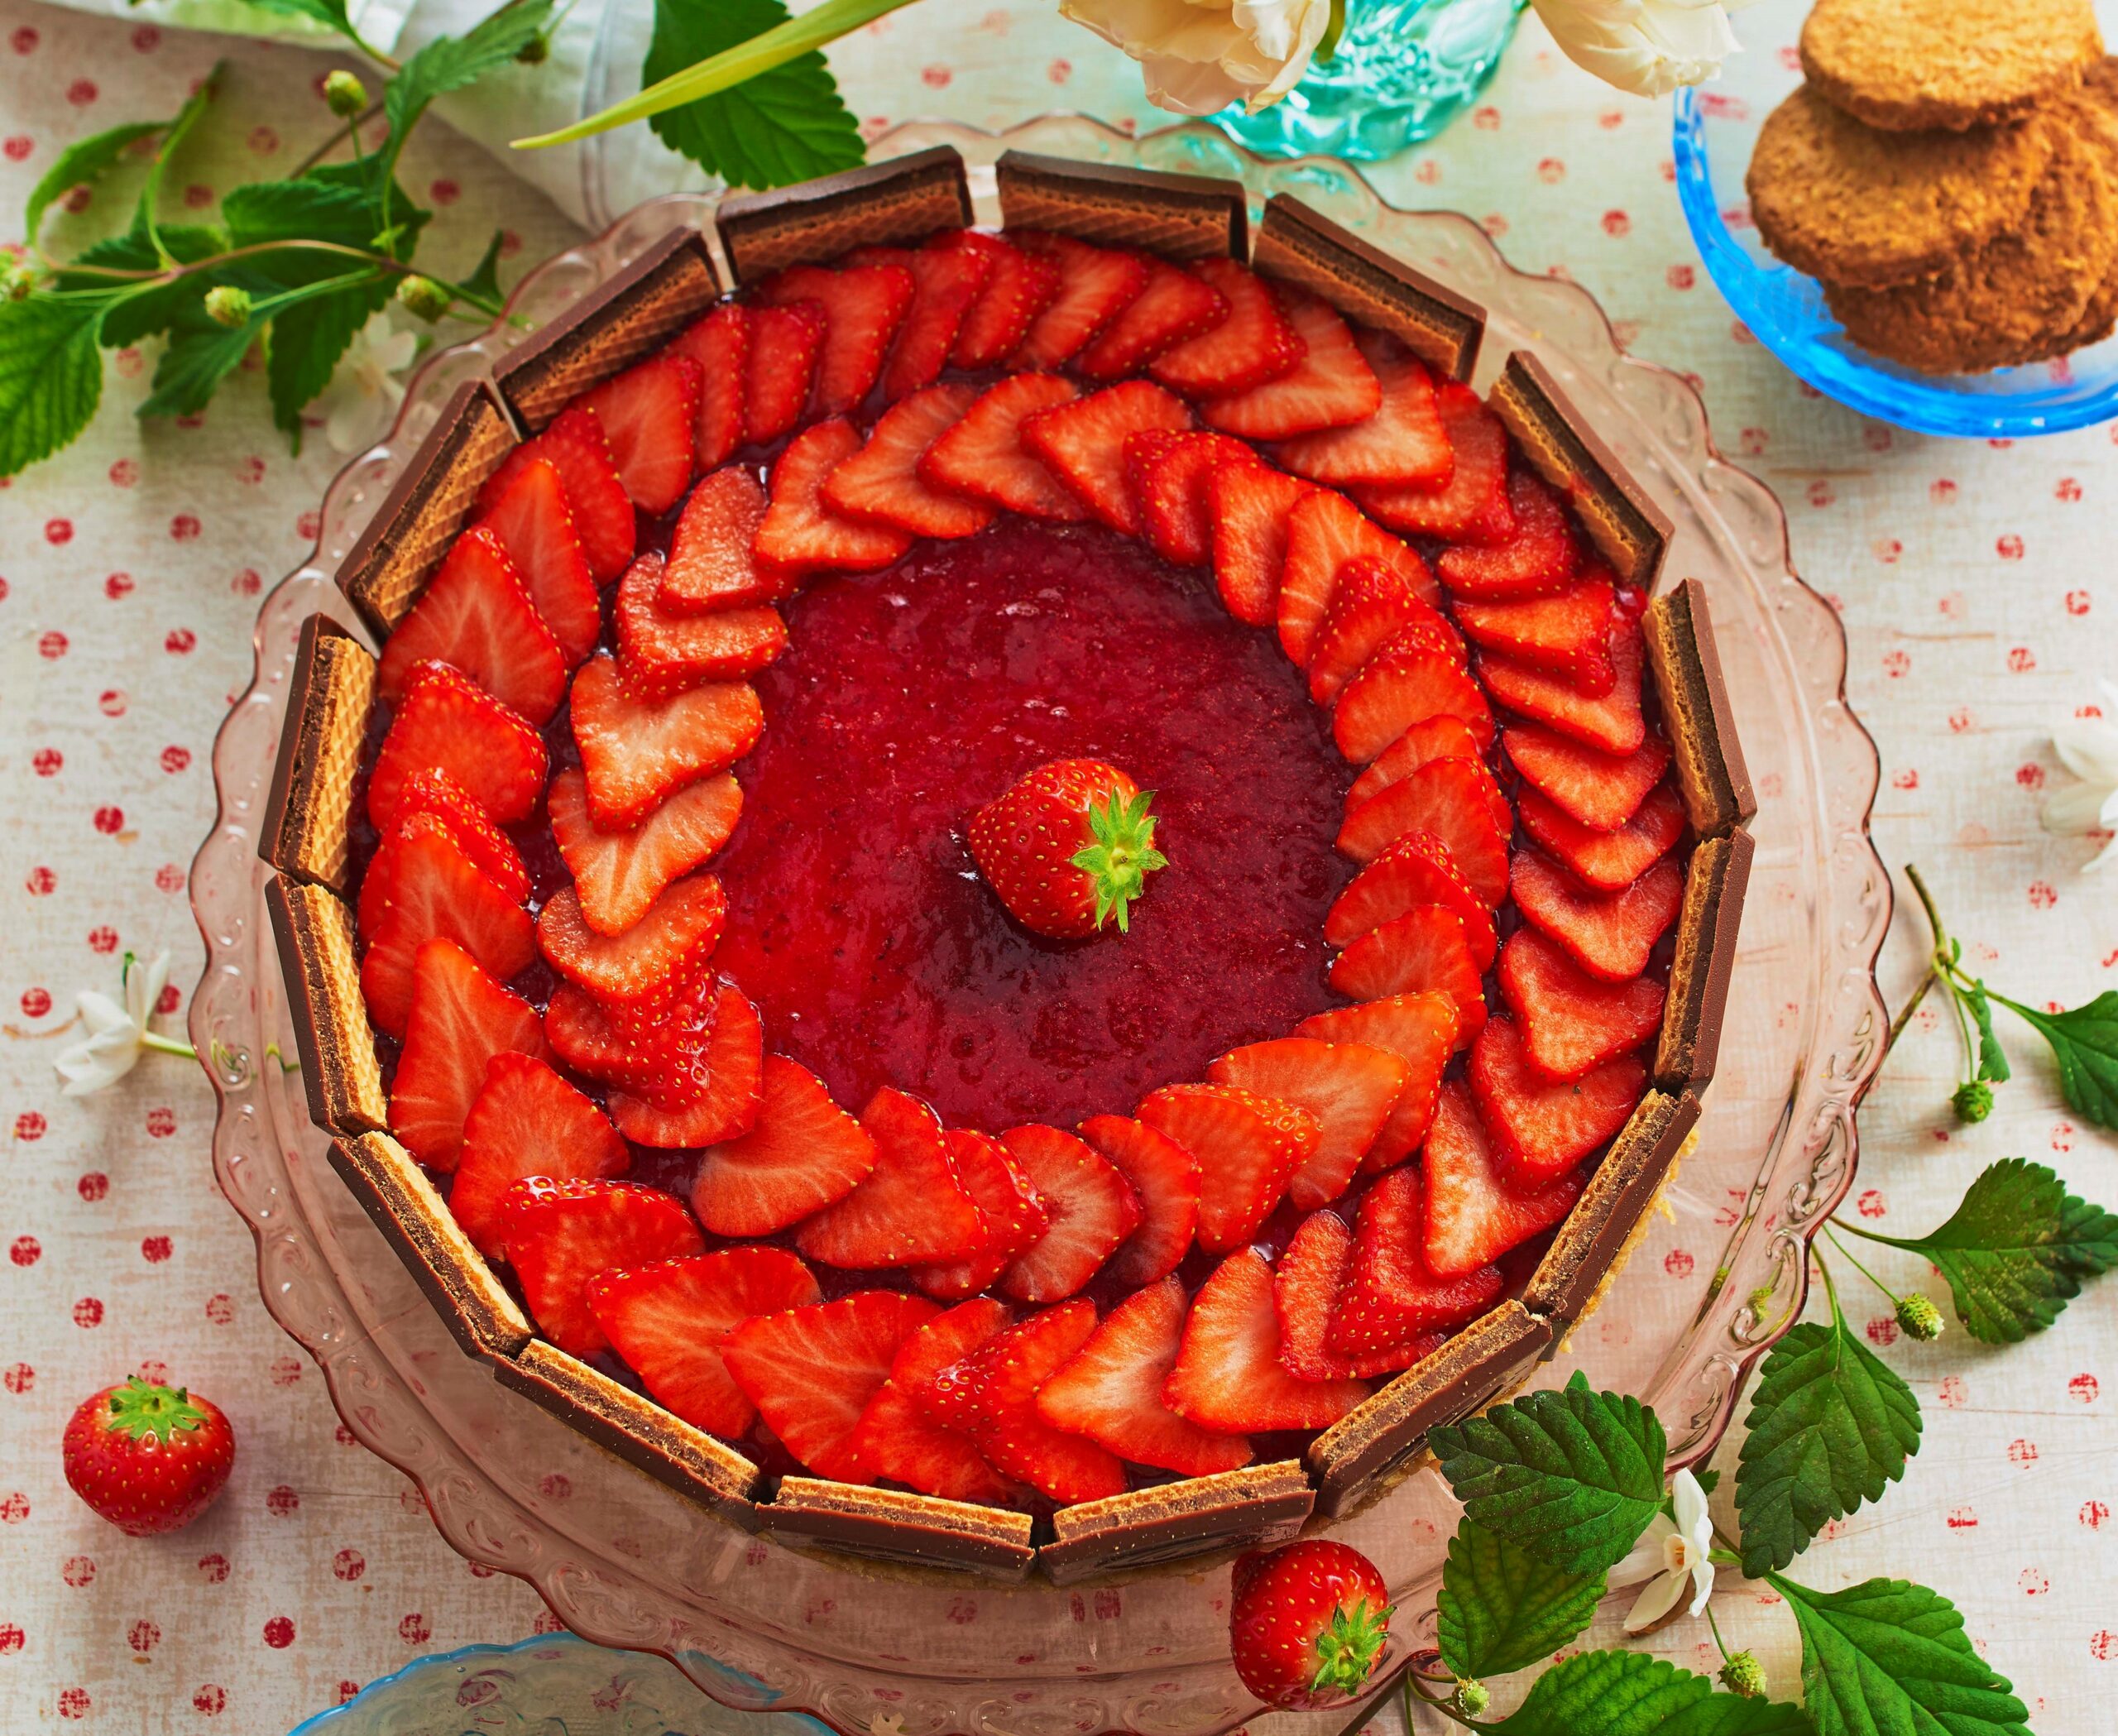 So wunderbar schmeckt der Frühling: Frische Erdbeeren treffen auf einen knusprig-schokoladigen Waffelrand